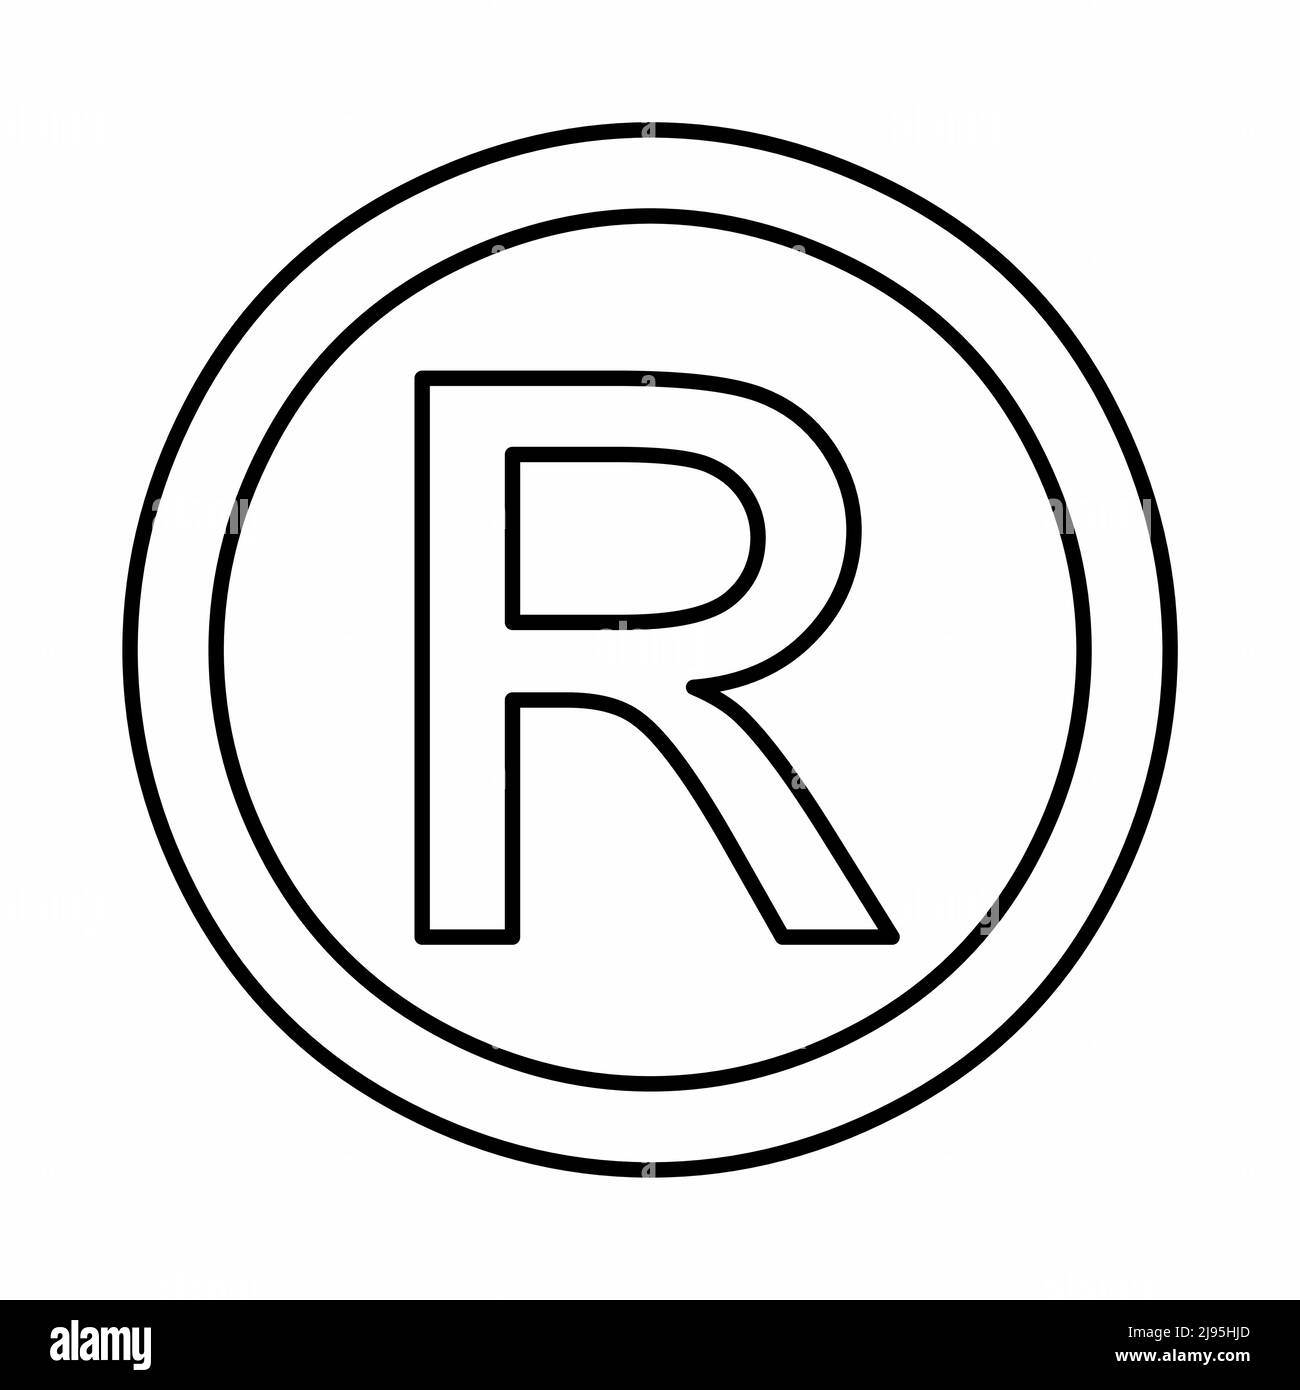 Registered Trademark symbol, black outlines on white background Stock Vector